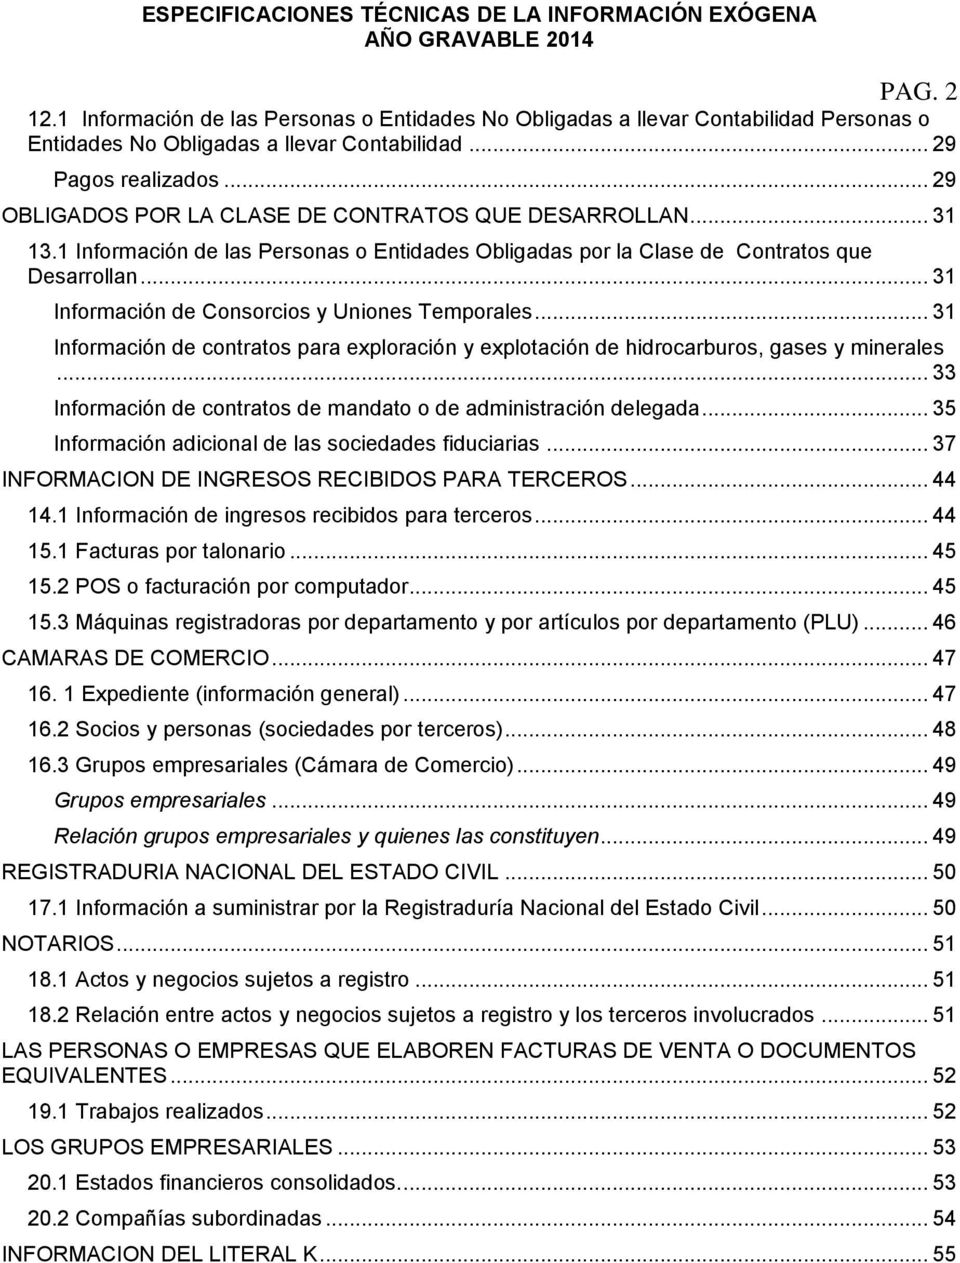 .. 31 Información de Consorcios y Uniones Temporales... 31 Información de contratos para exploración y explotación de hidrocarburos, gases y minerales.